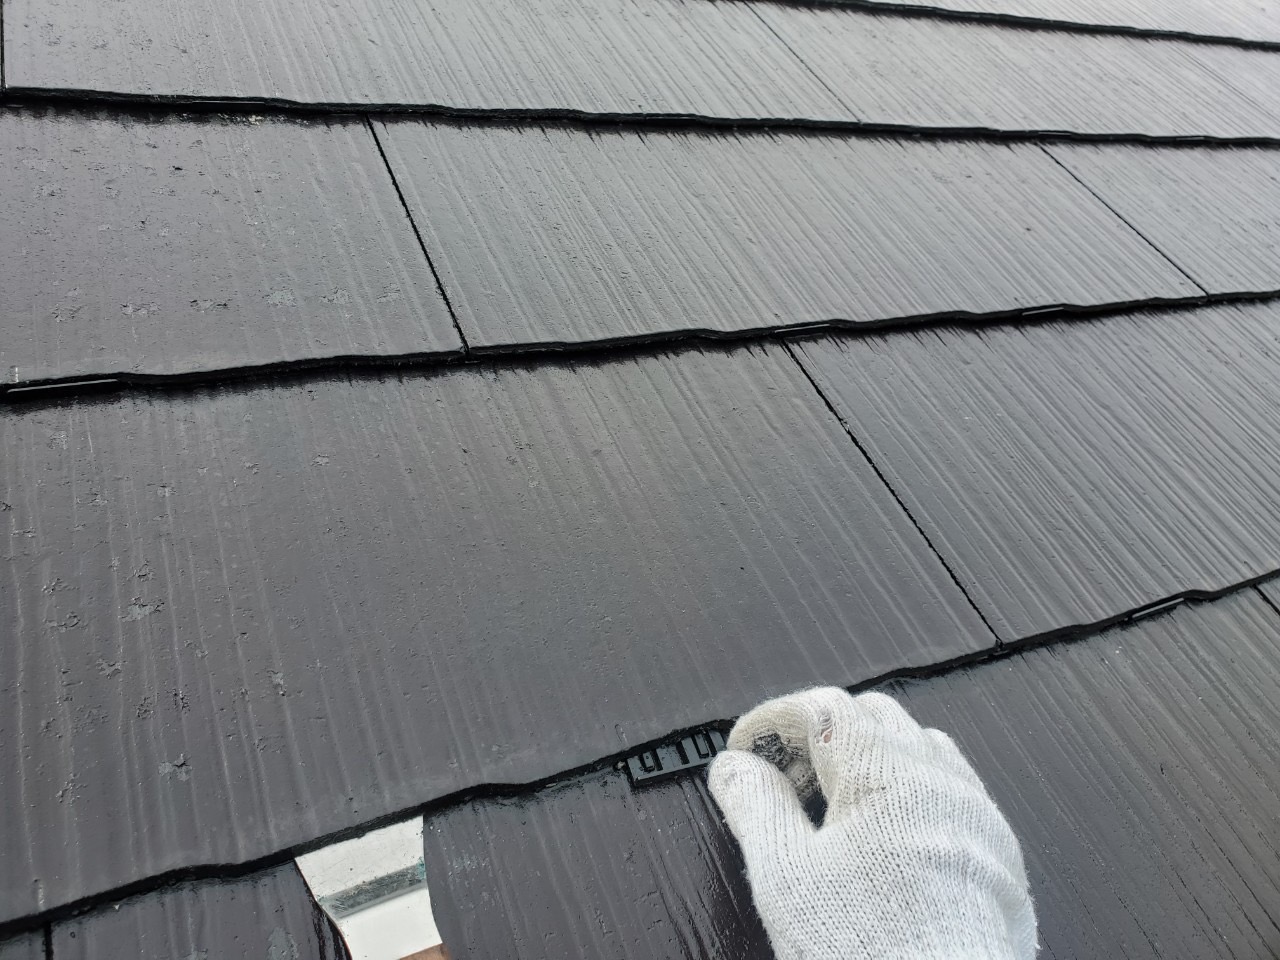 【縁切り部材施工 状況】
屋根を塗装する際に塗料が屋根材同士の隙間をふさいでしまうのを防ぐためにタスペーサーを取り付けます。
屋根の内側への浸水や結露の発生を防ぎ、屋根裏を腐食させないために必須です。